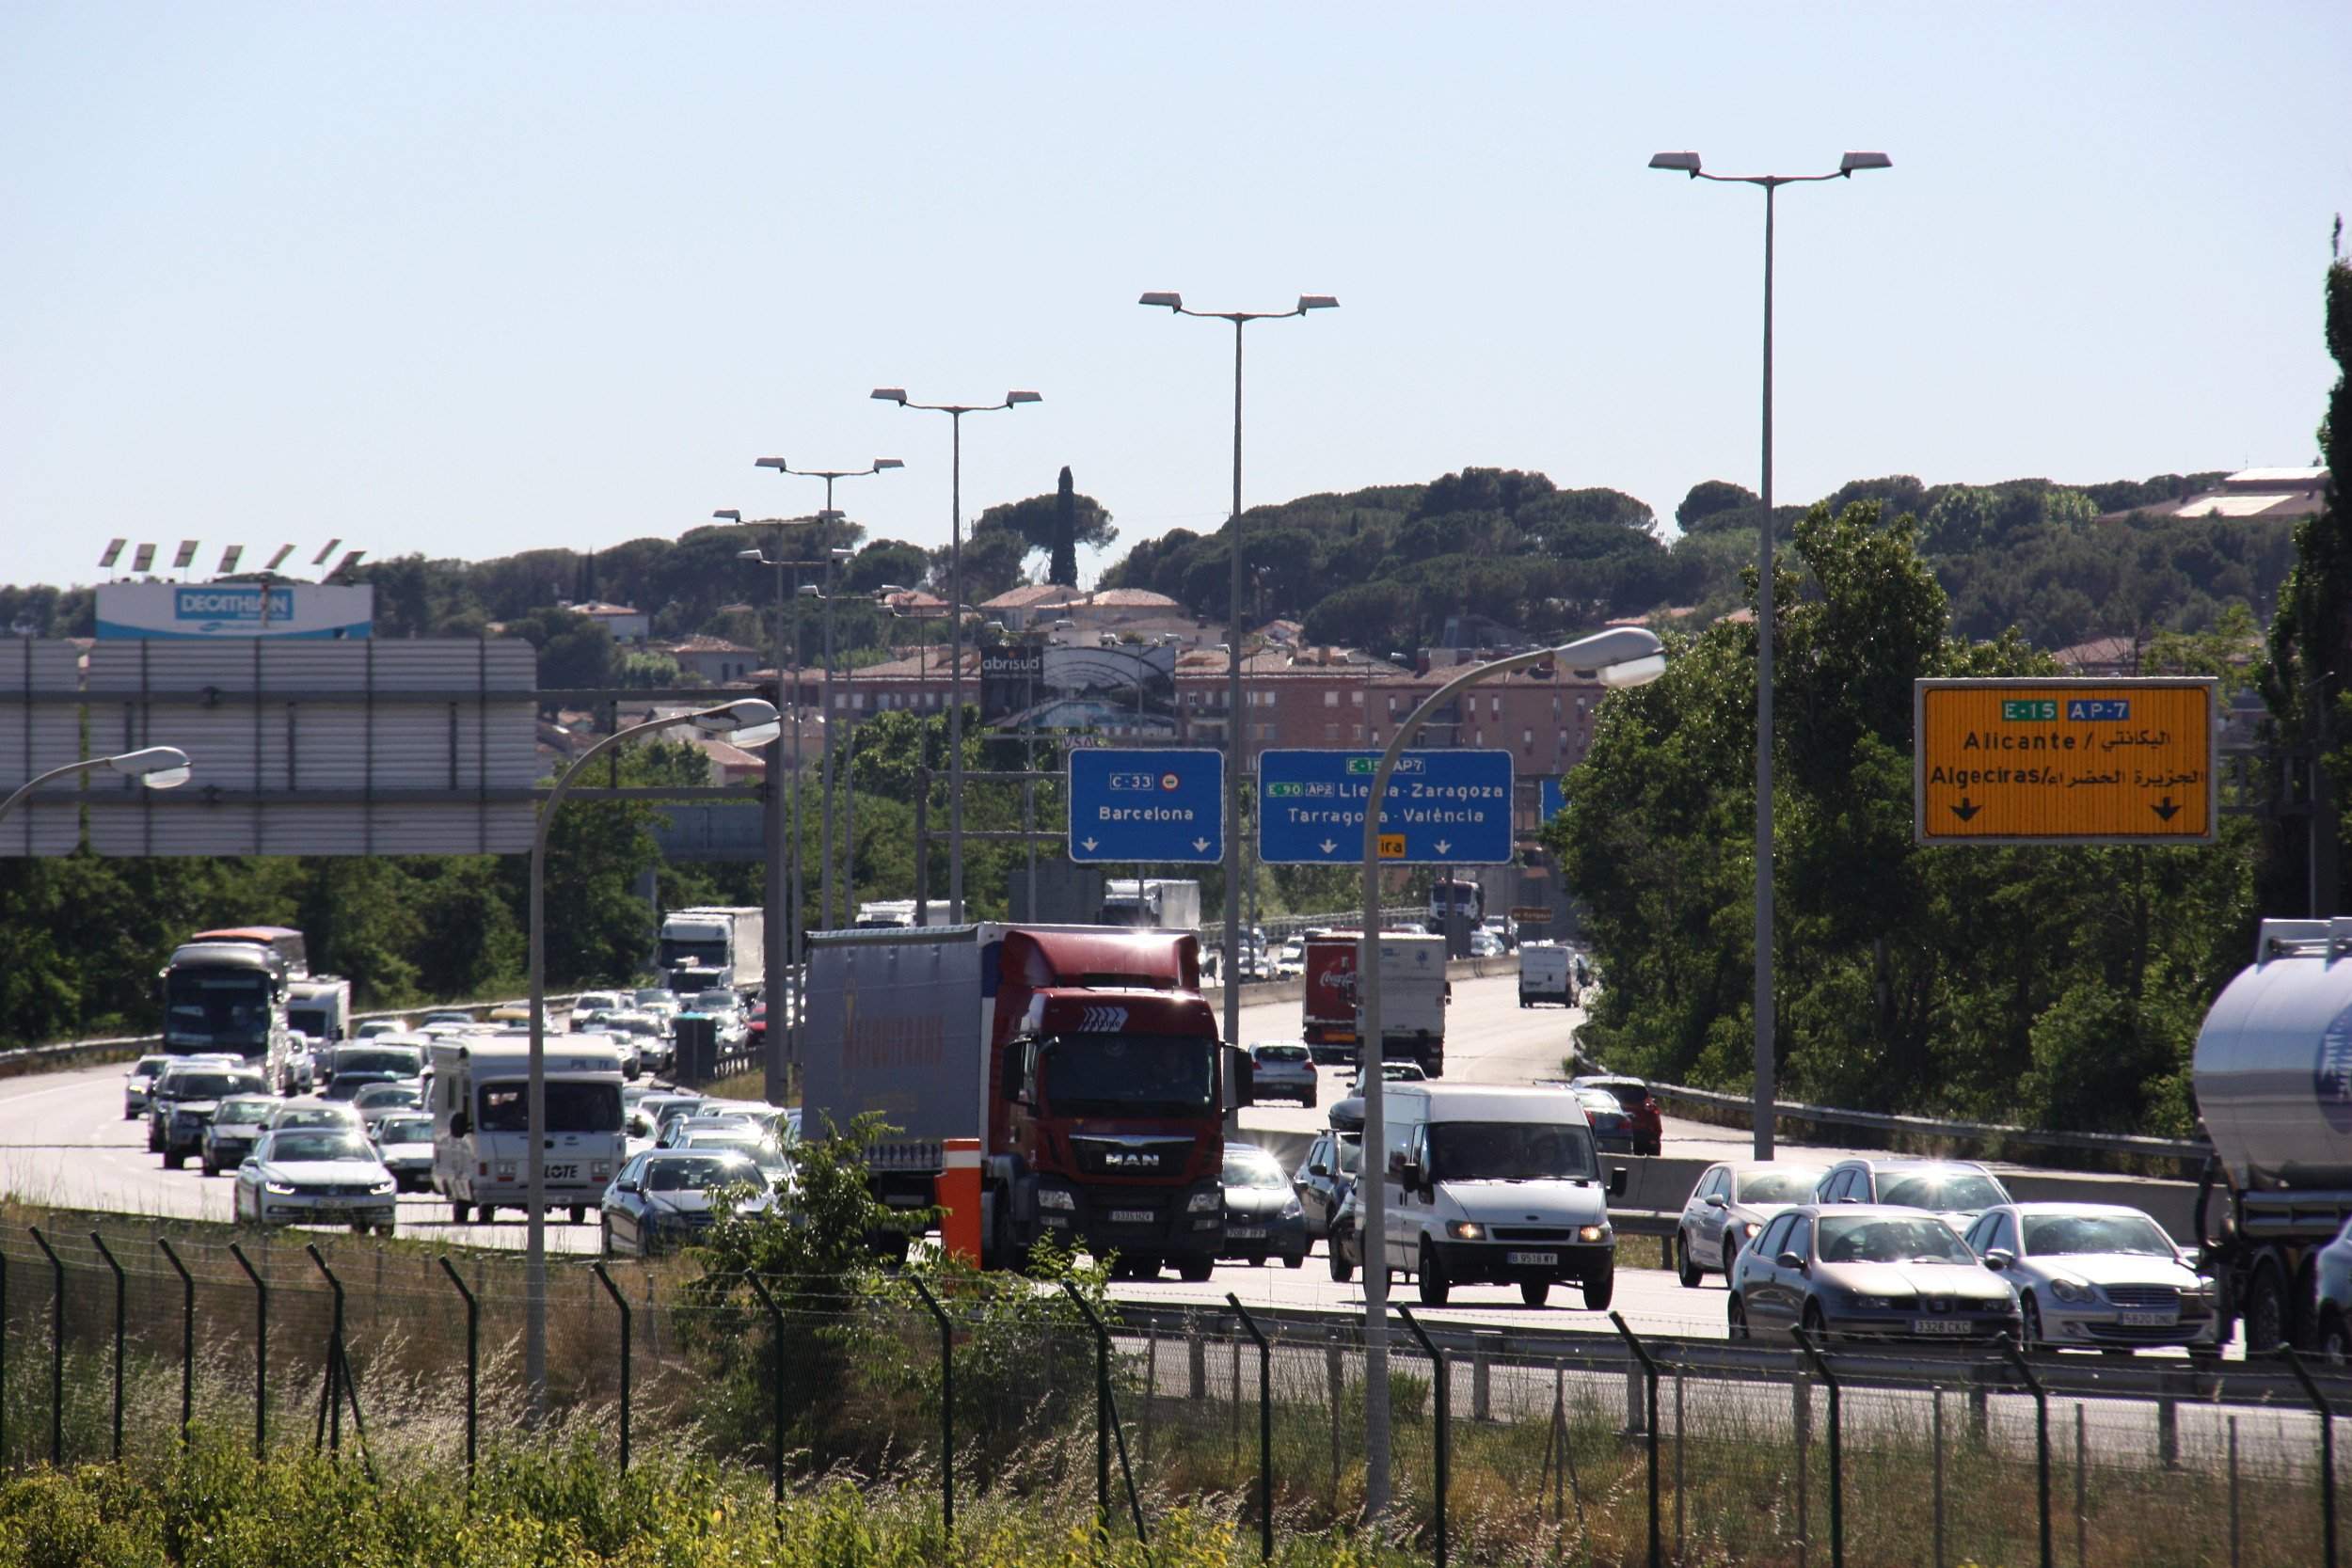 Operació sortida per la segona Pasqua: les pitjors hores i carreteres per sortir de Barcelona